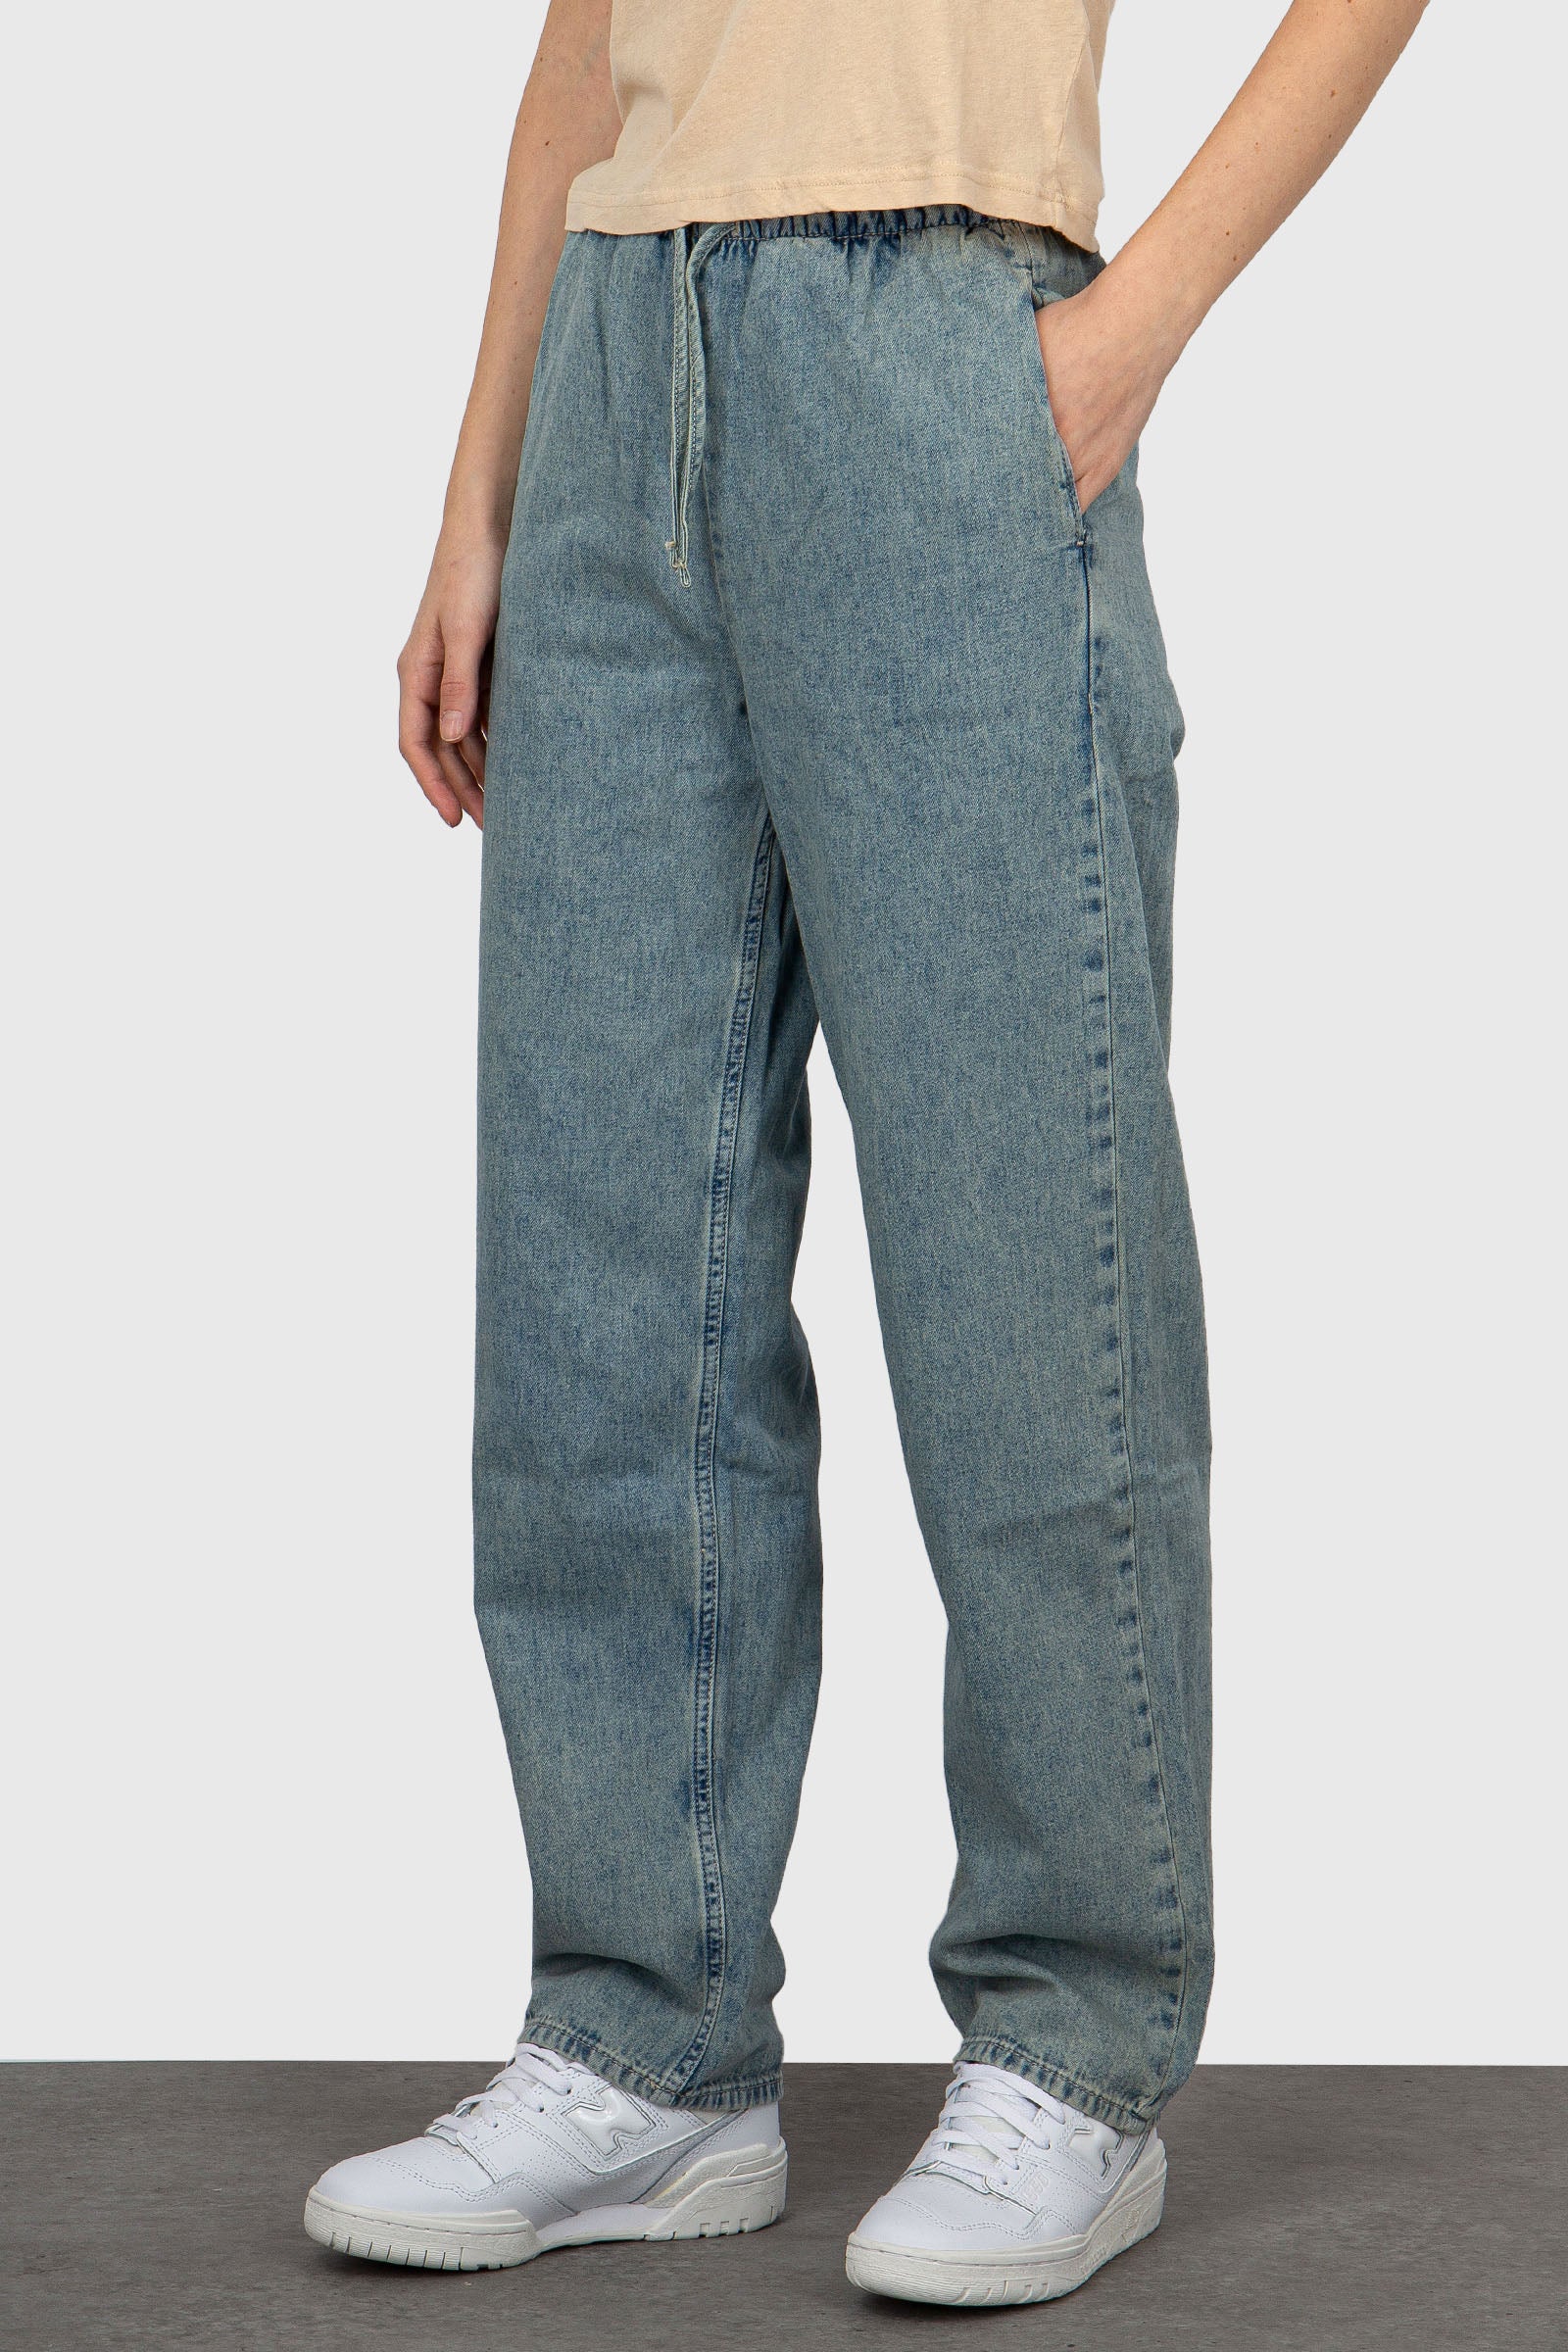 American Vintage Jeans Besobay Light Blue Denim - 4